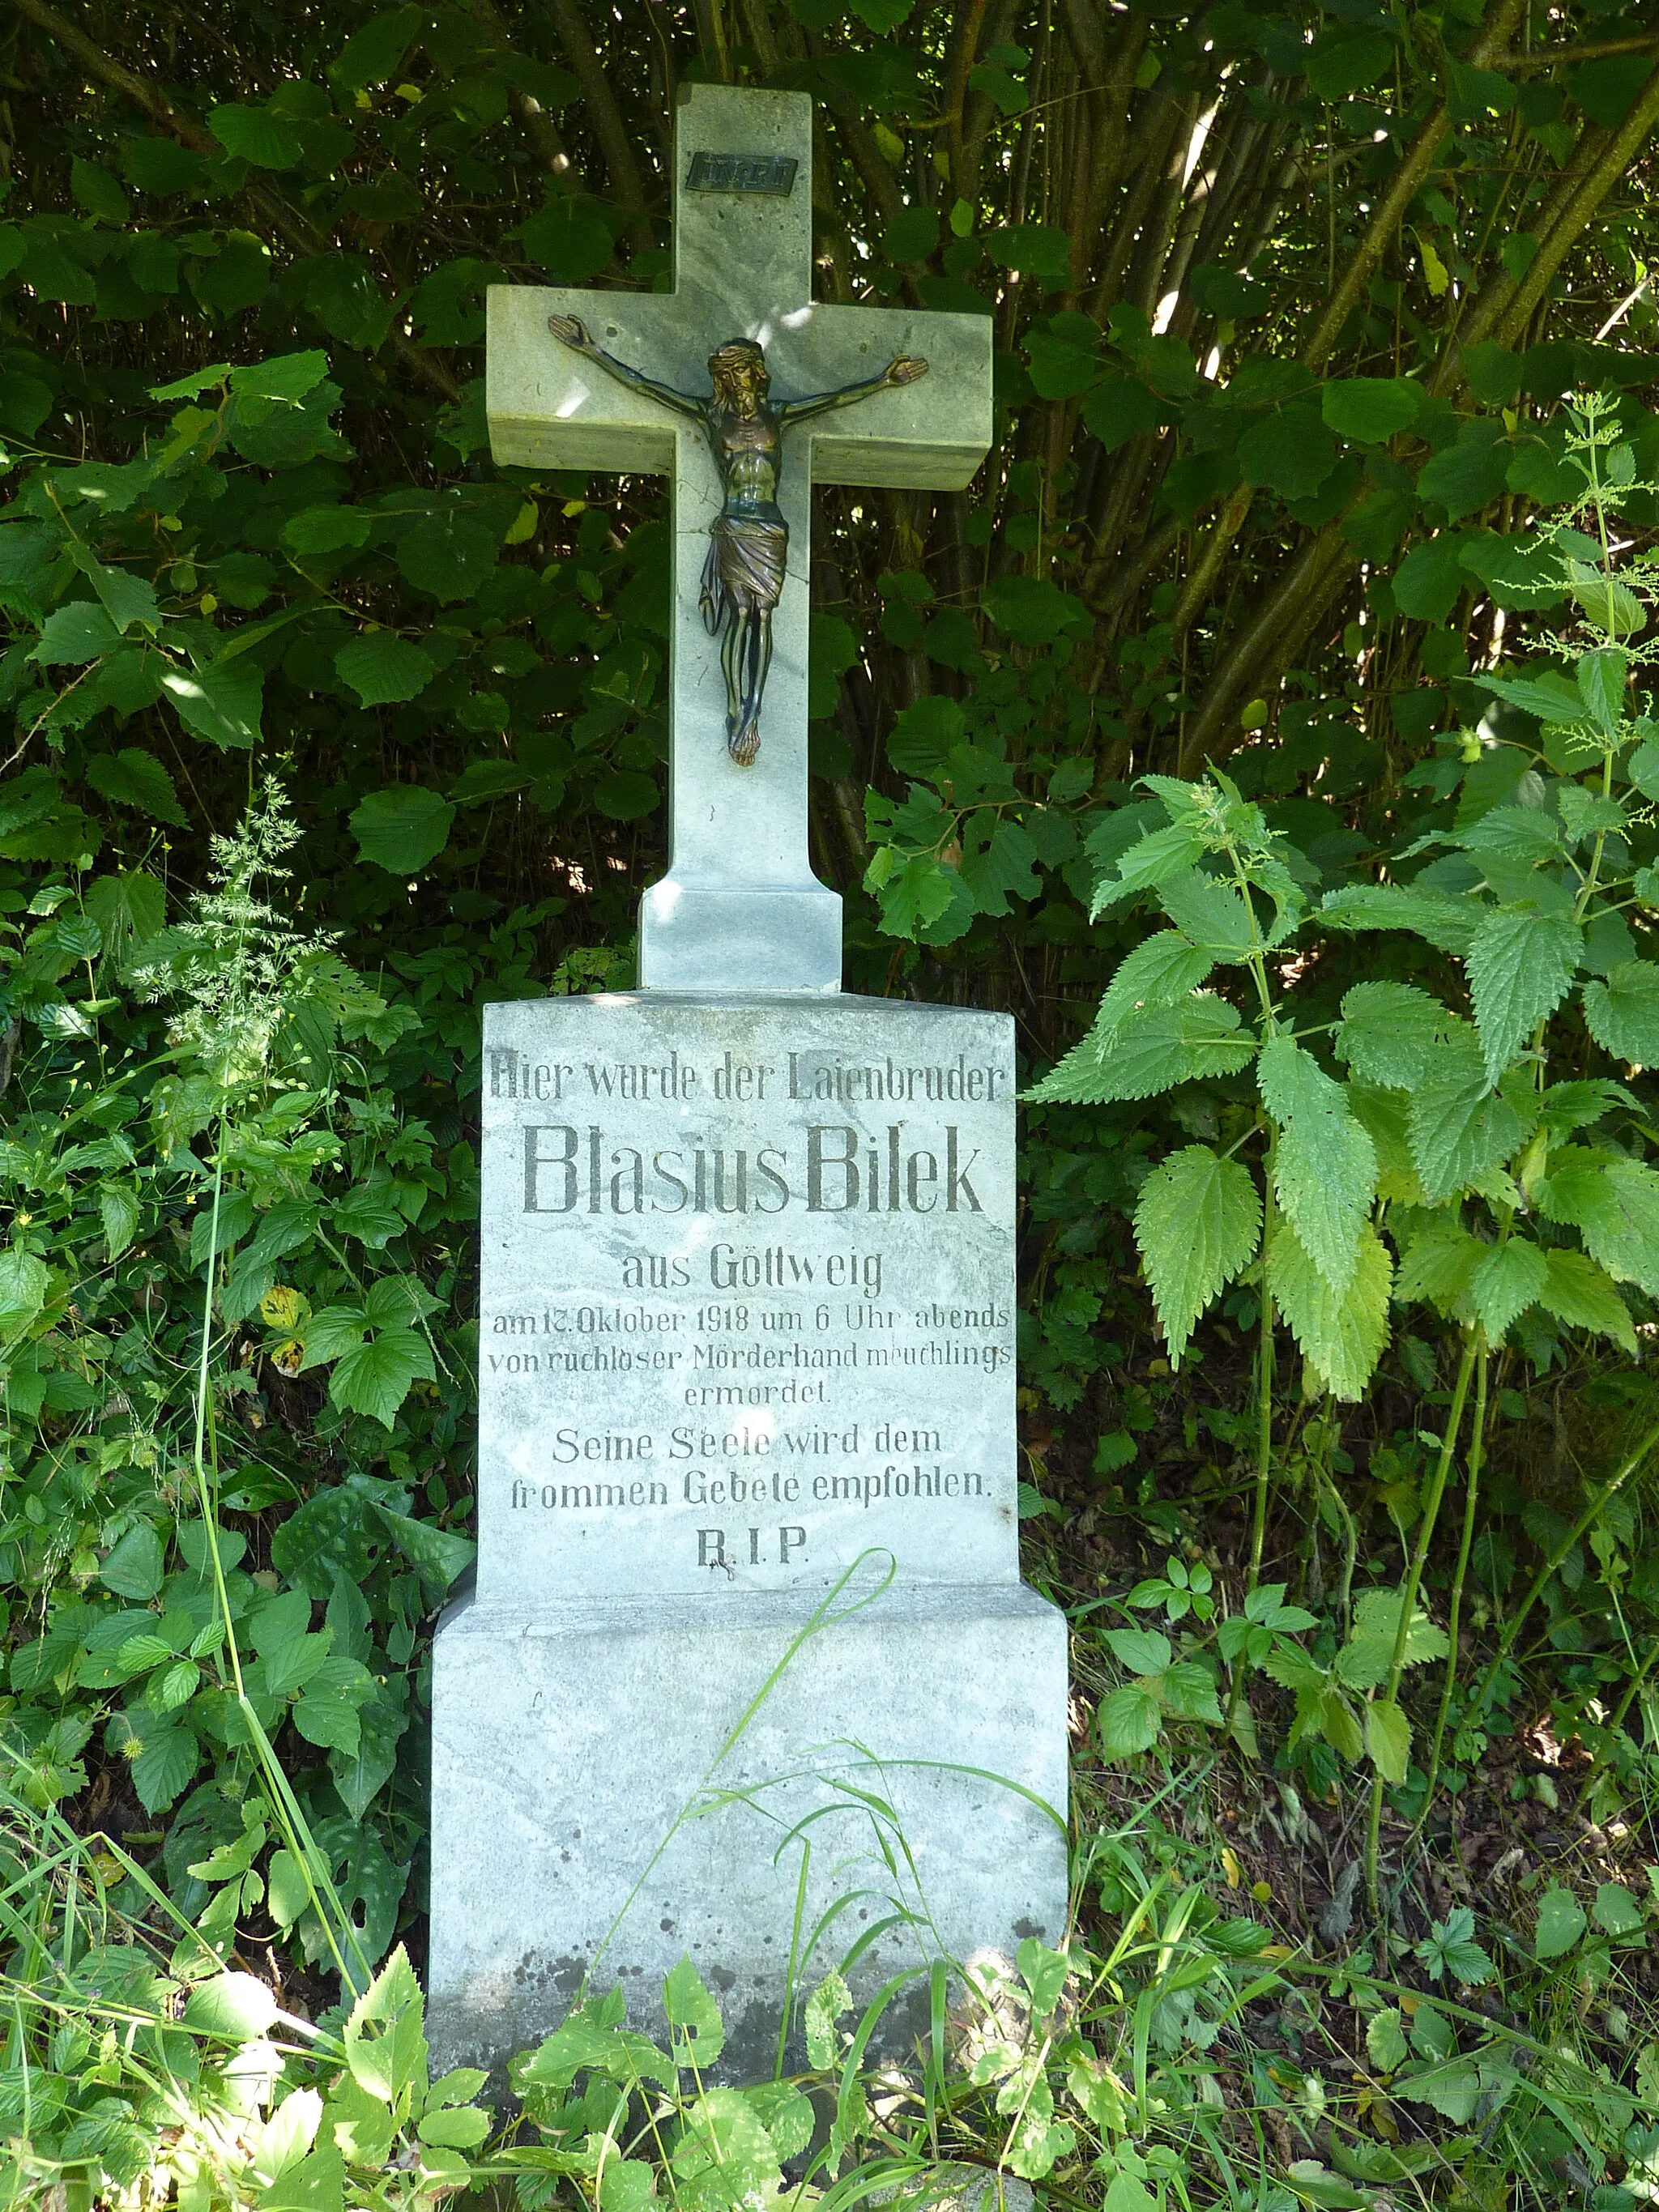 Photo showing: Blasius-Bilek-Kreuz, Gedenkkreuz für Bruder Blasius Bilek (ermordet 17. Oktober1918) beim Gerinne des Mühlbaches der Hörfarther Mühle in Hörfarth, Paudorf, Niederösterreich